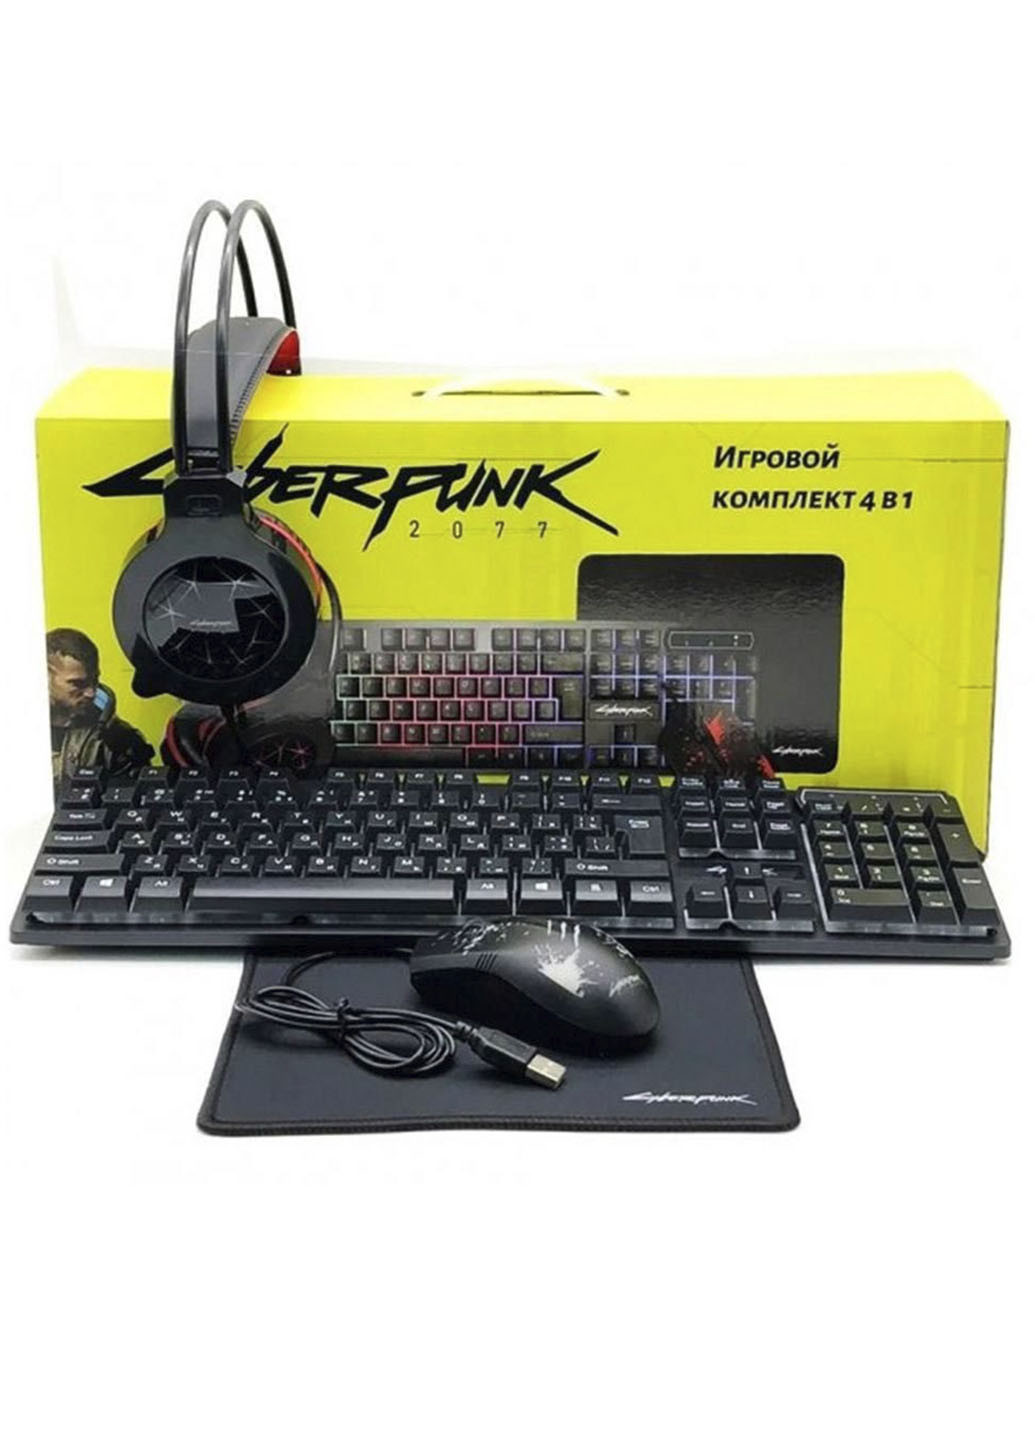 Игровой комплект 4 в 1 Cyberpunk CP-009 (клавиатура + мышка + наушники + коврик) XO чёрная